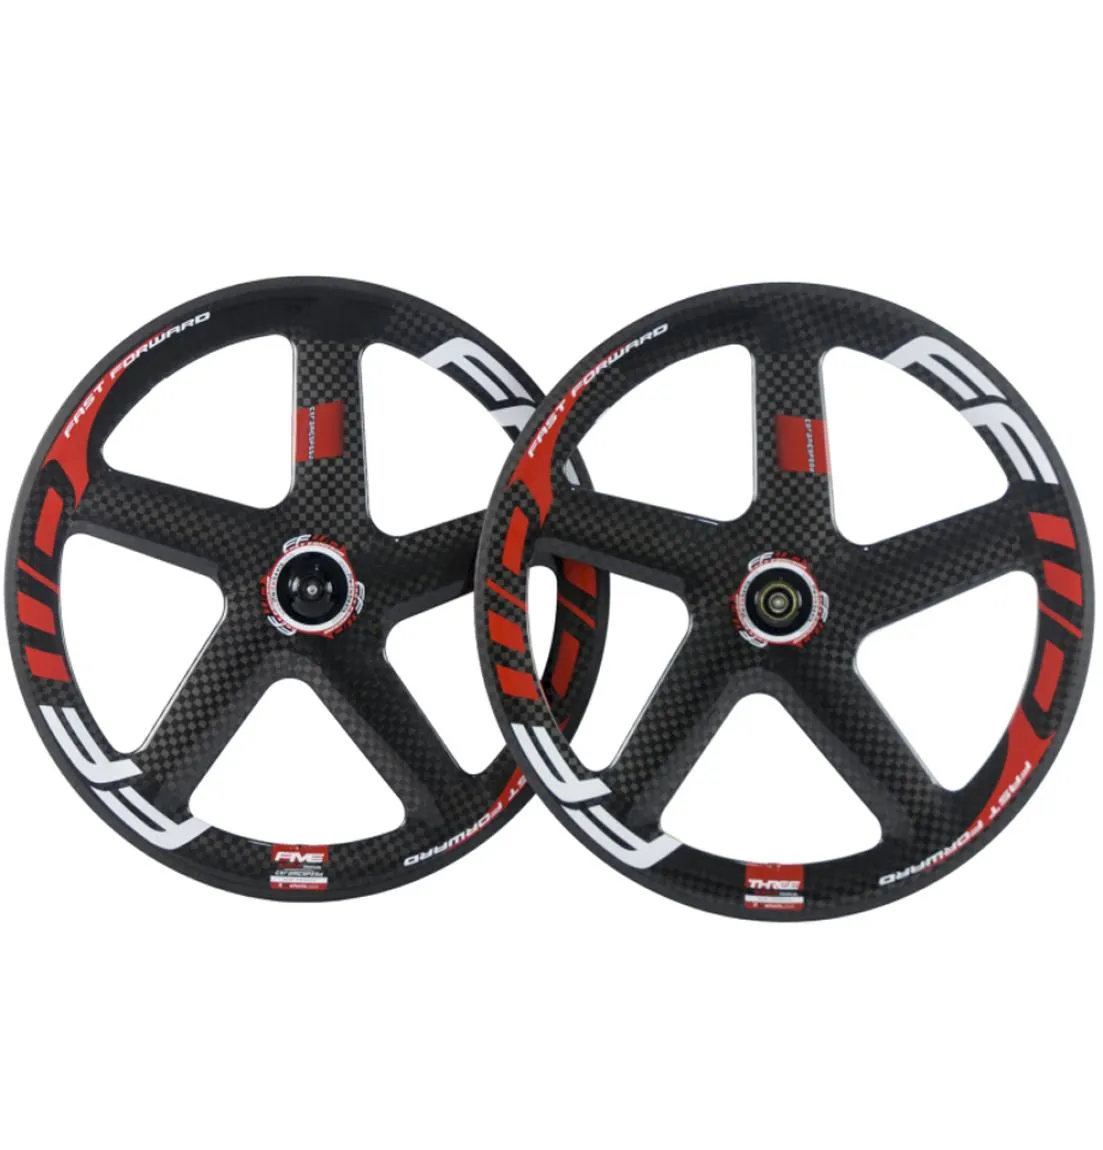 700 ° C Full Carbon 5 Spokes Wheelset Roadbike Clinchertubular Carbon Wheelset Rot -Weiß -Aufkleber 12K Glossy Wheels1232163